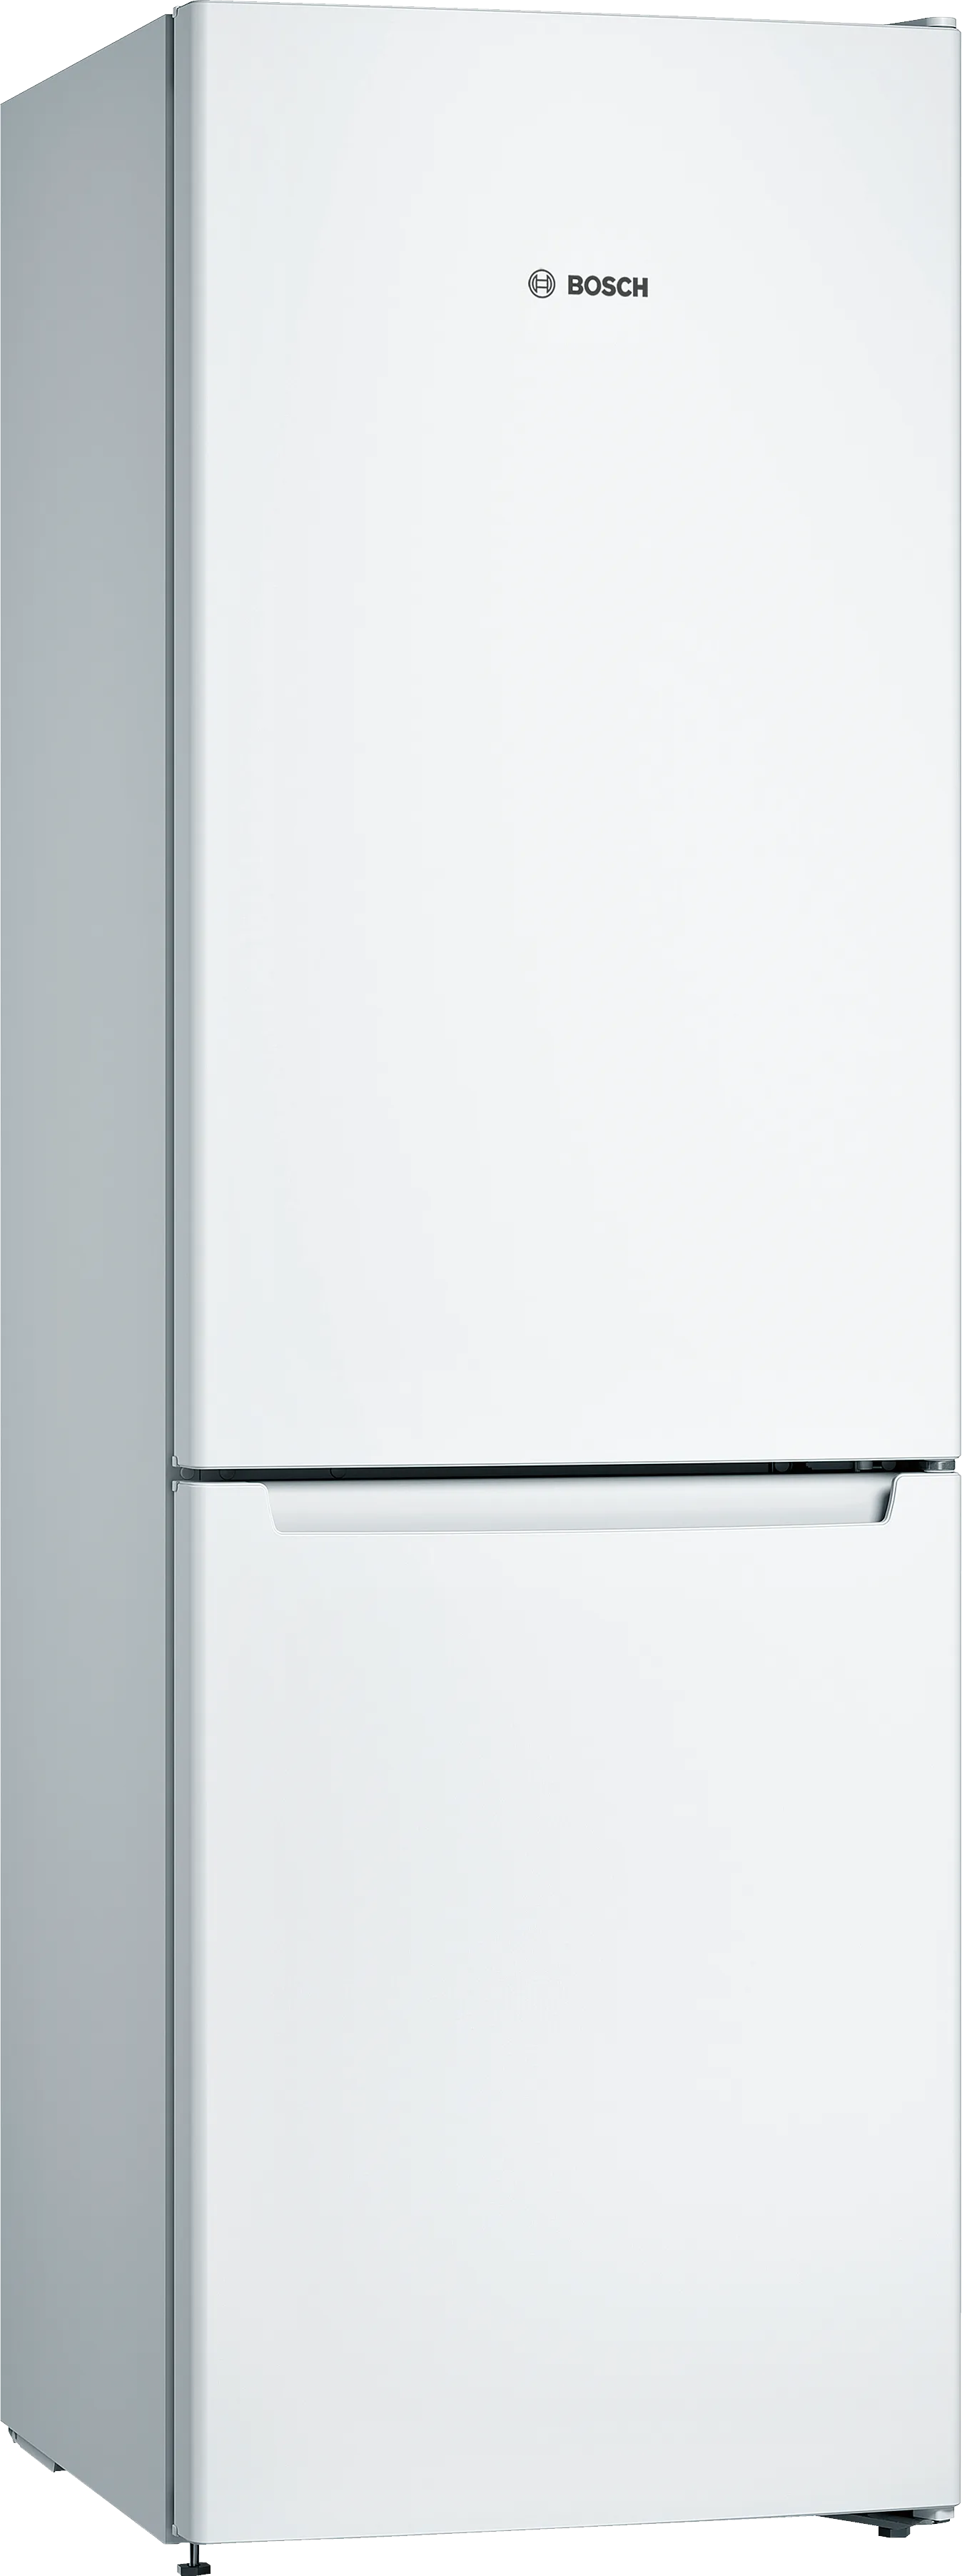 Серия 2 Отдельно стоящий холодильник с нижней морозильной камерой 186 x 60 cm Белый 